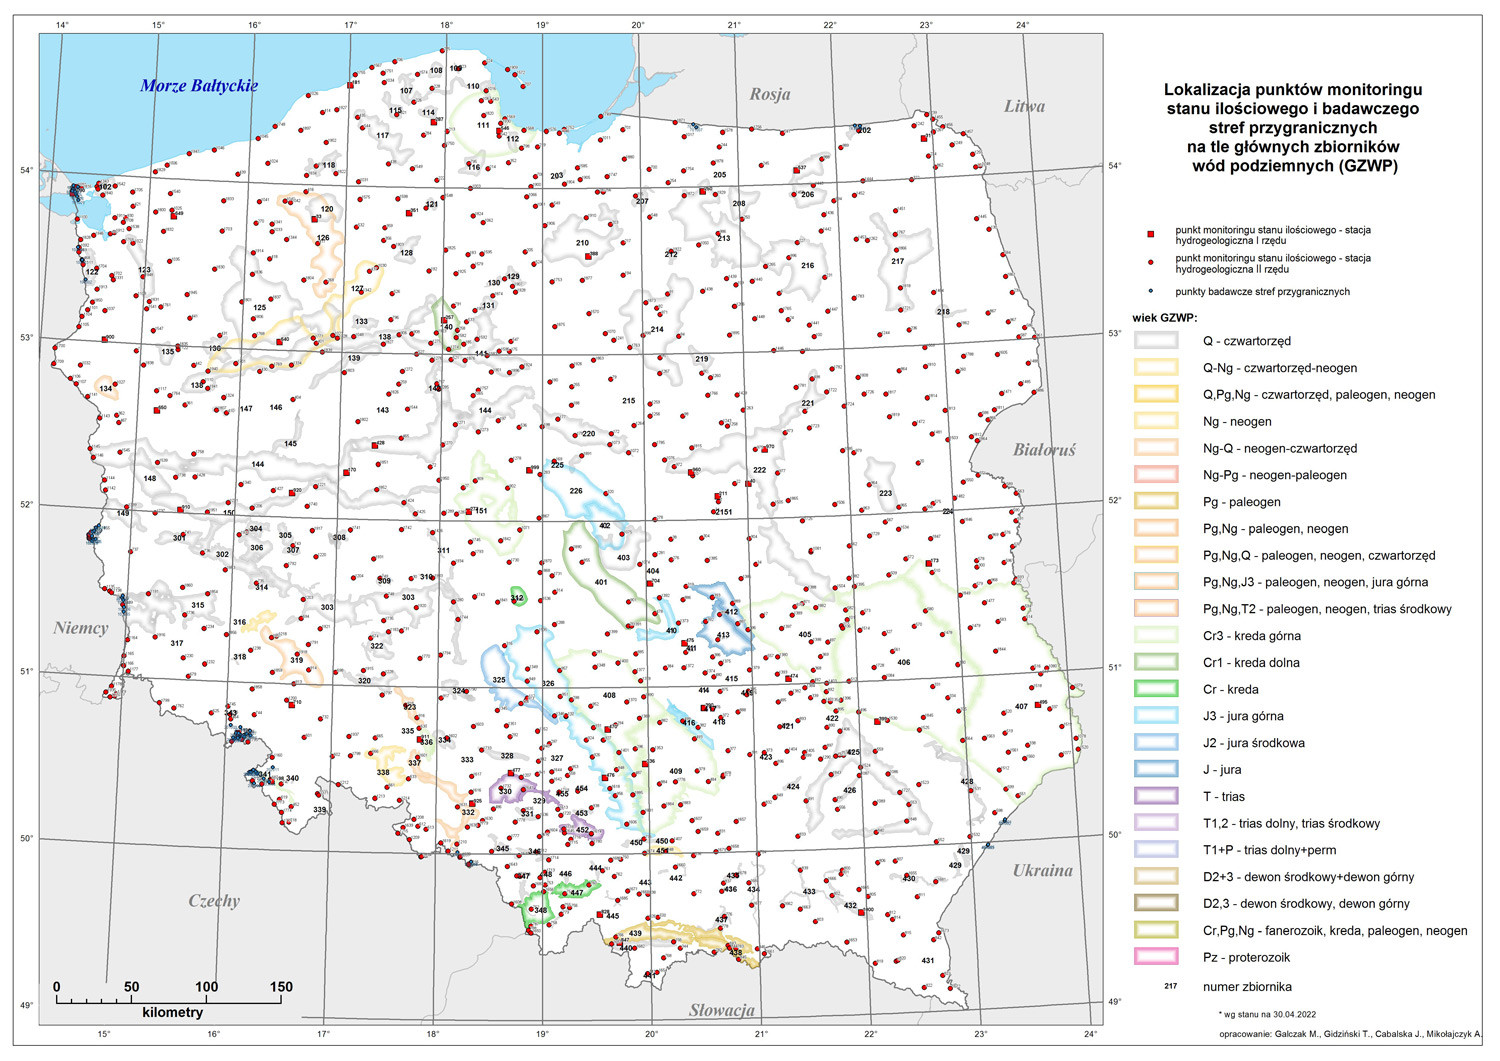 Lokalizacja punktów monitoringu stanu ilościowego i chemicznego – stacji sieci obserwacyjno-badawczej wód podziemnych PIG-PIB na tle głównych zbiorników wód podziemnych (GZWP).